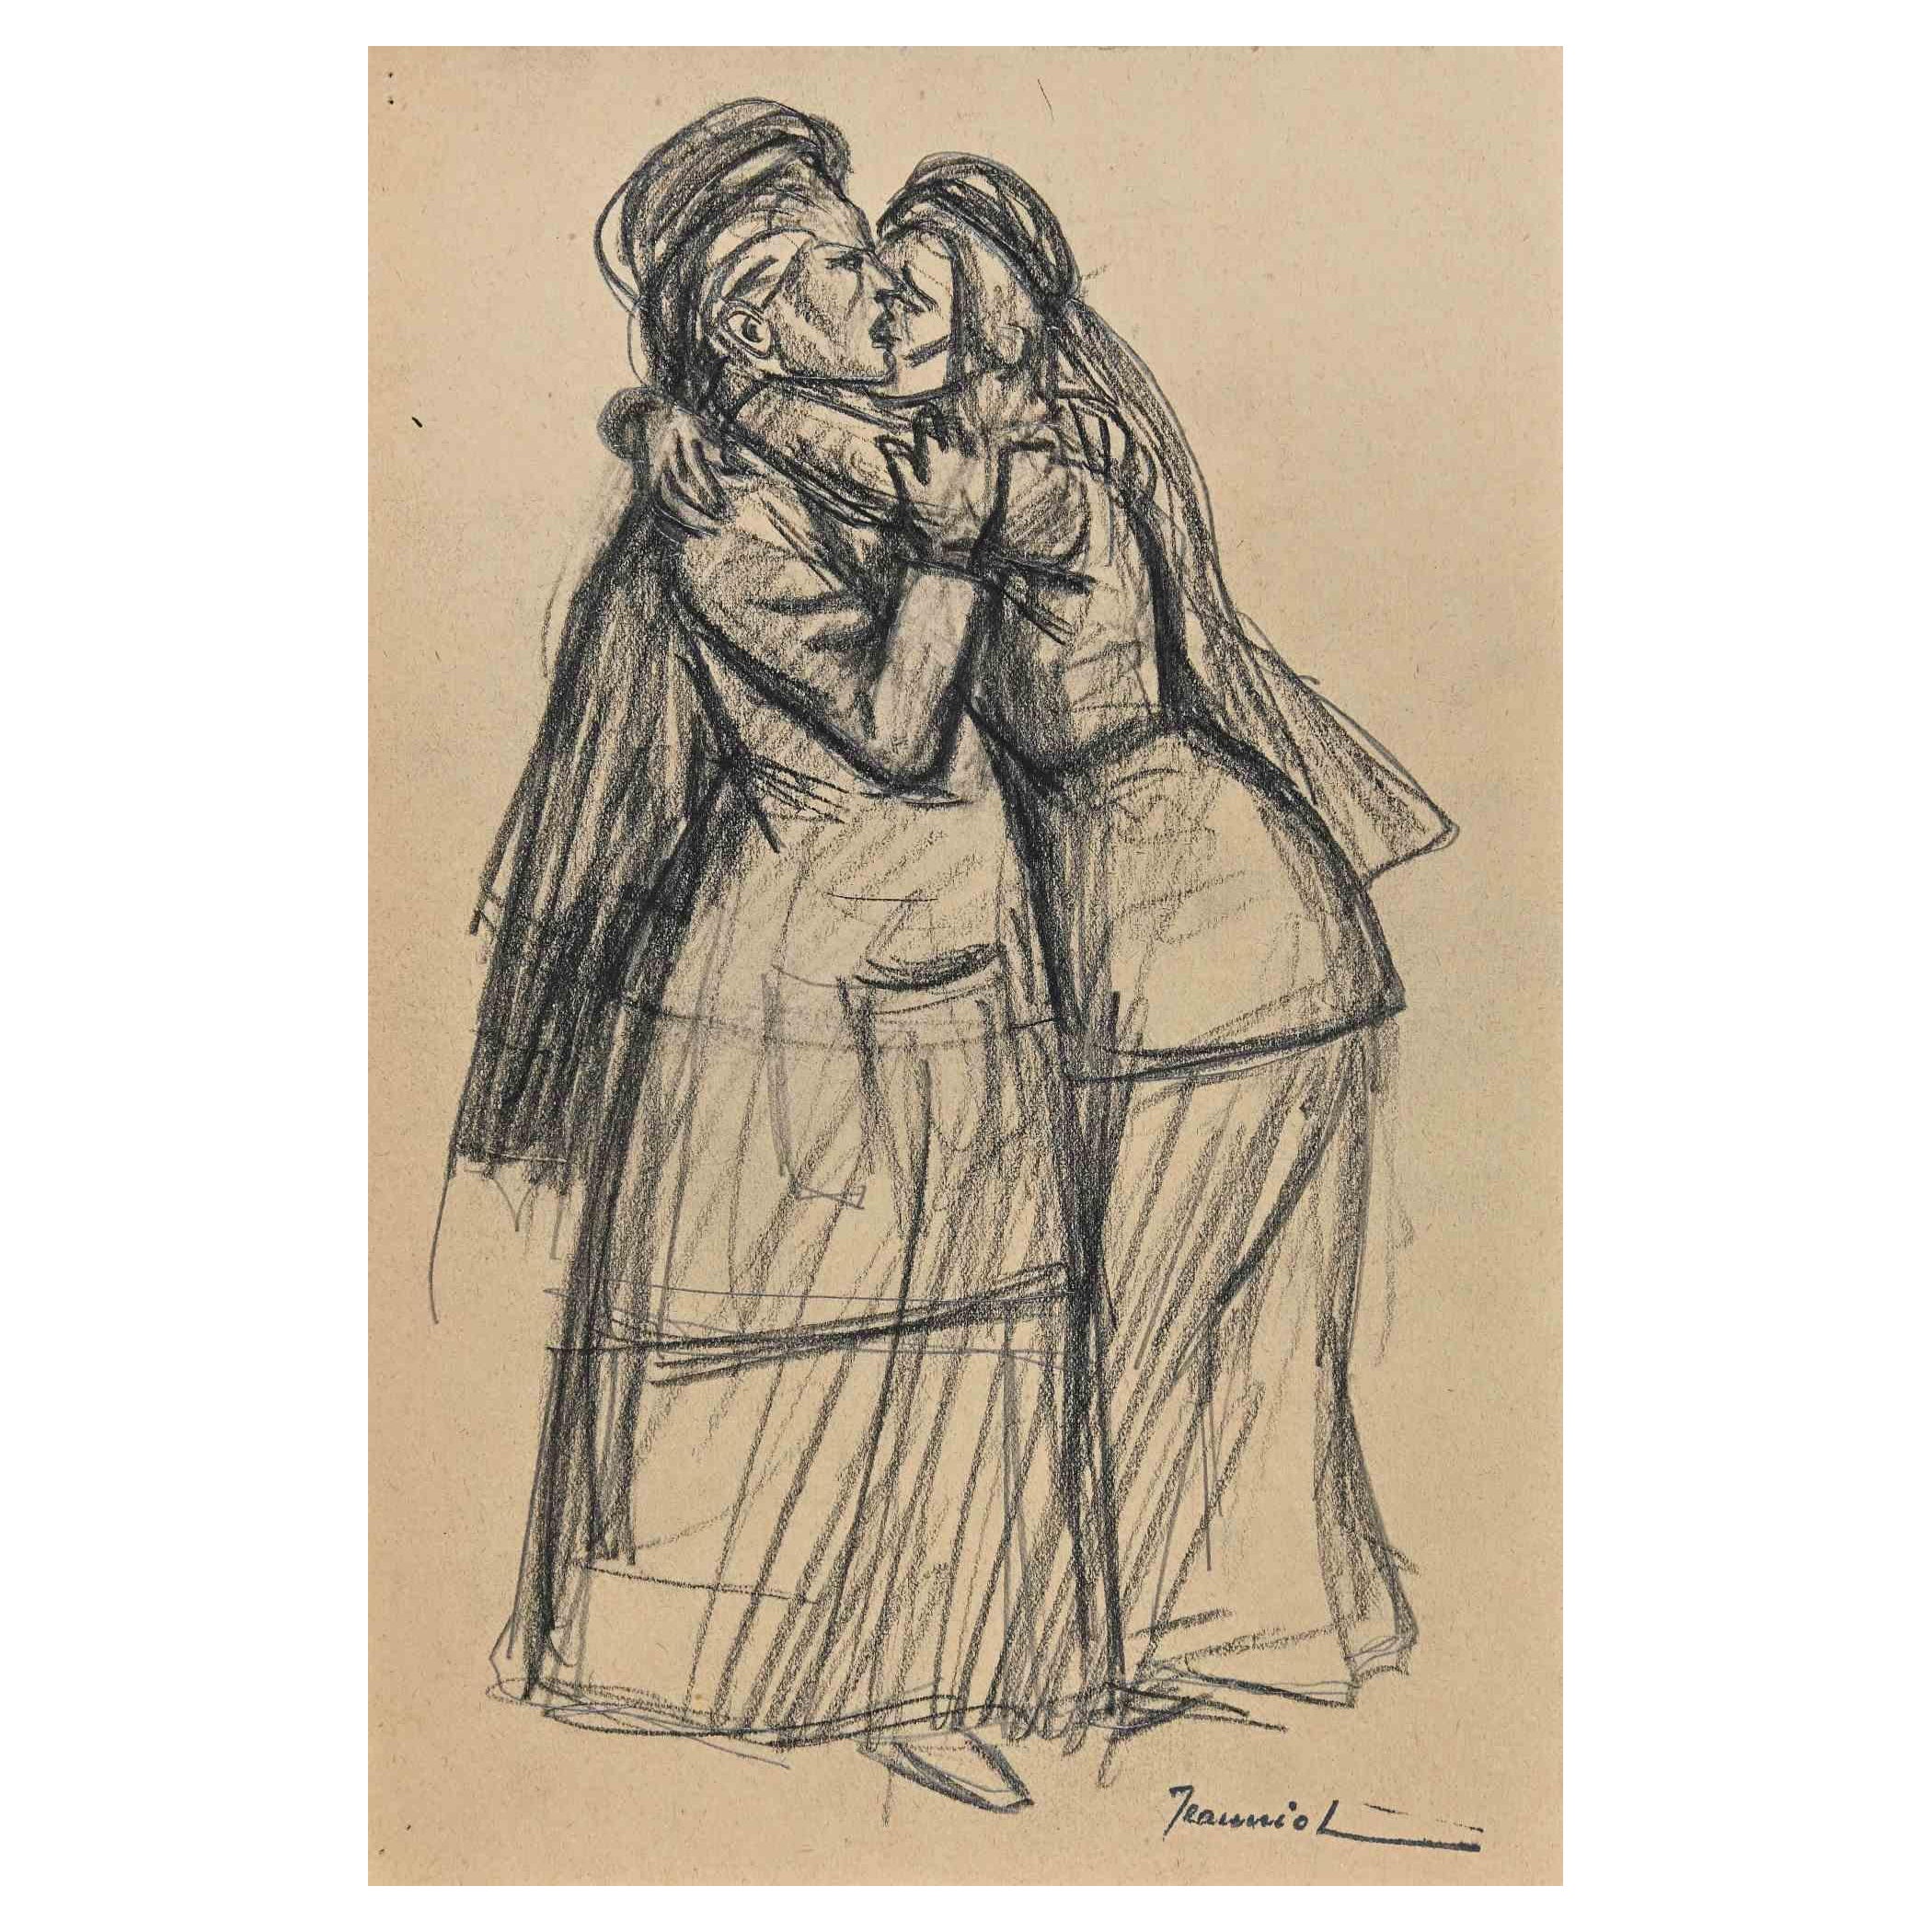 Das Mitleid ist eine Original-Zeichnung auf Papier des Malers Pierre Georges Jeanniot (1848-1934) aus den 1890er Jahren.

Zeichnen mit Kohle.

Handsigniert auf der Unterseite.

Gute Bedingungen.

Pierre-Georges Jeanniot (1848-1934) war ein